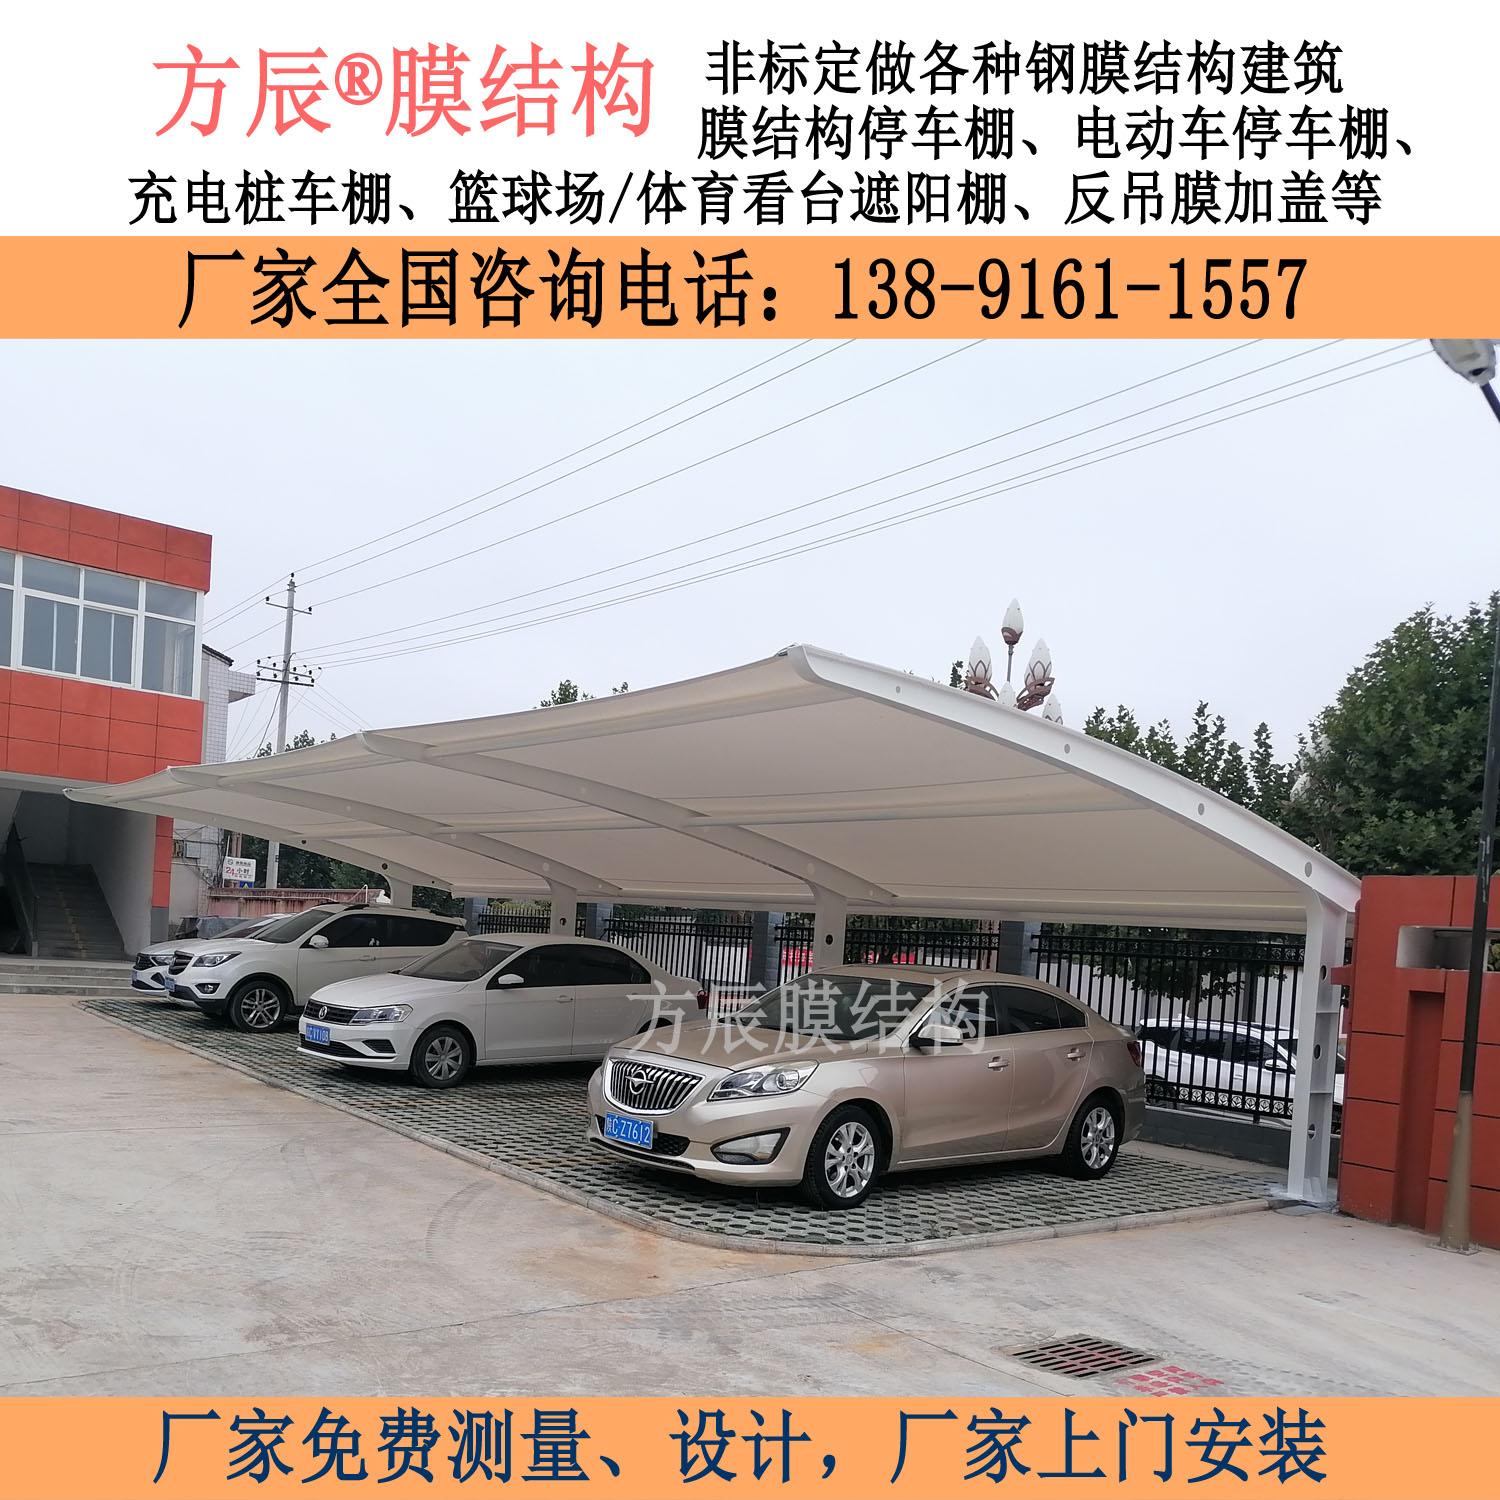 陕西省宝鸡市千阳县水沟镇中心小学膜结构停车棚项目